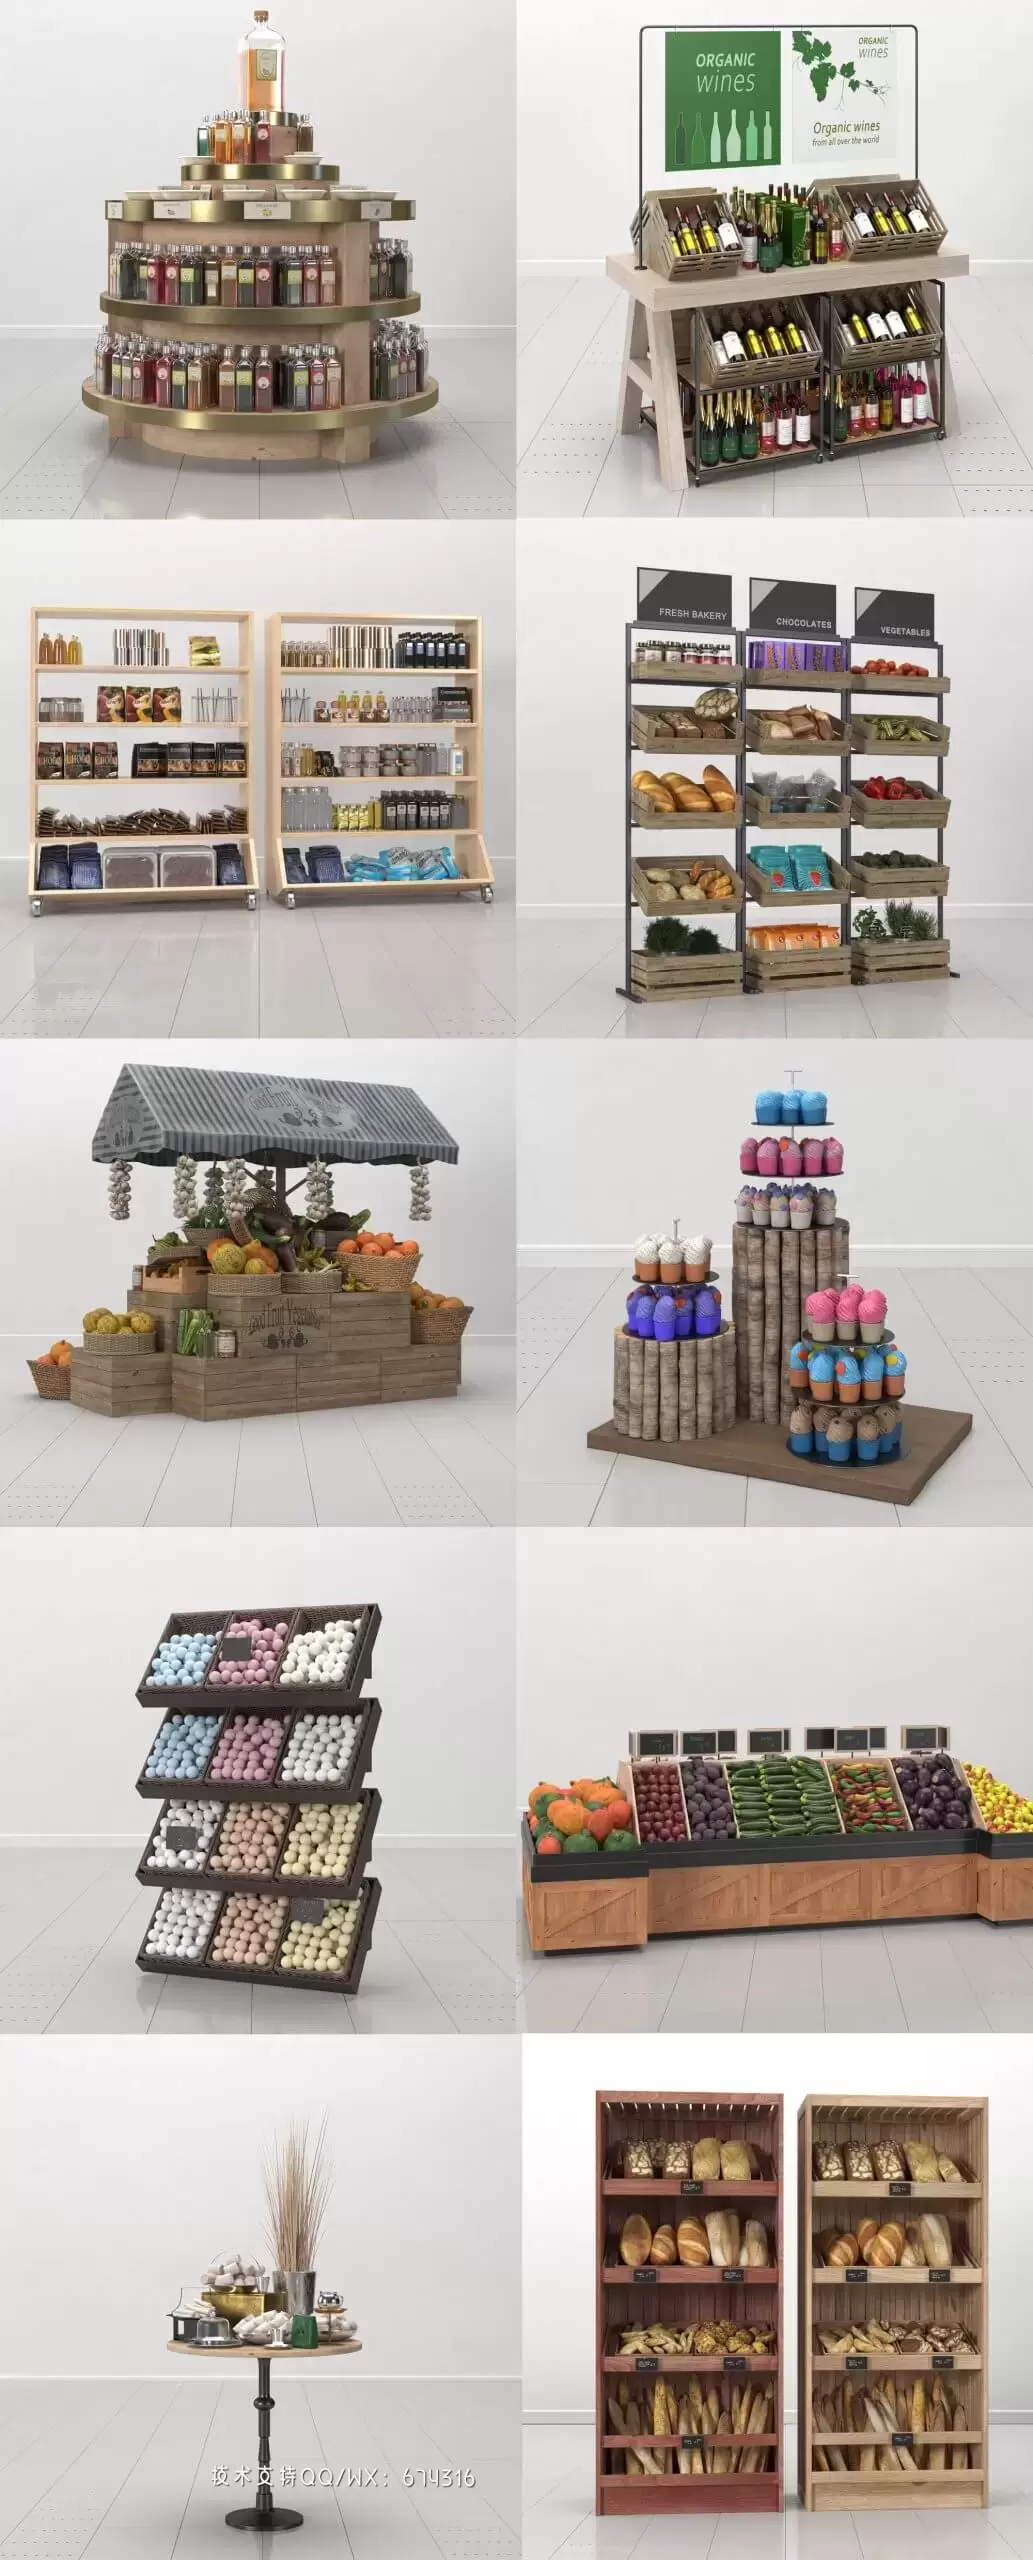 10组面包酒水蔬菜水果等食物饮料货架3D模型合集（C4D）免费下载